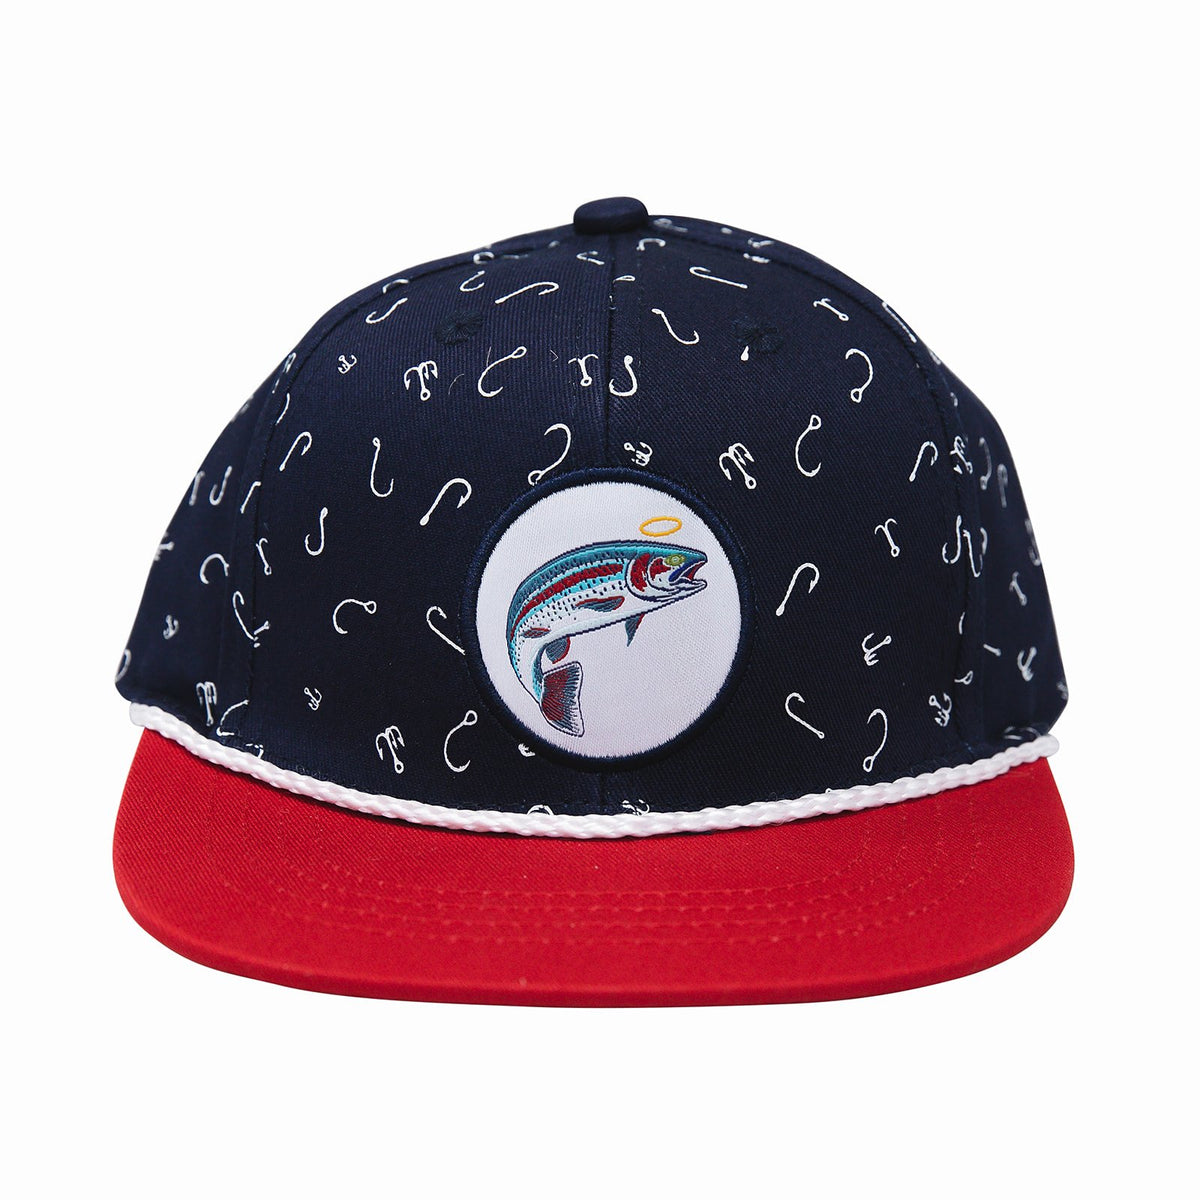 Cash & Co Baseball Hat - Trout